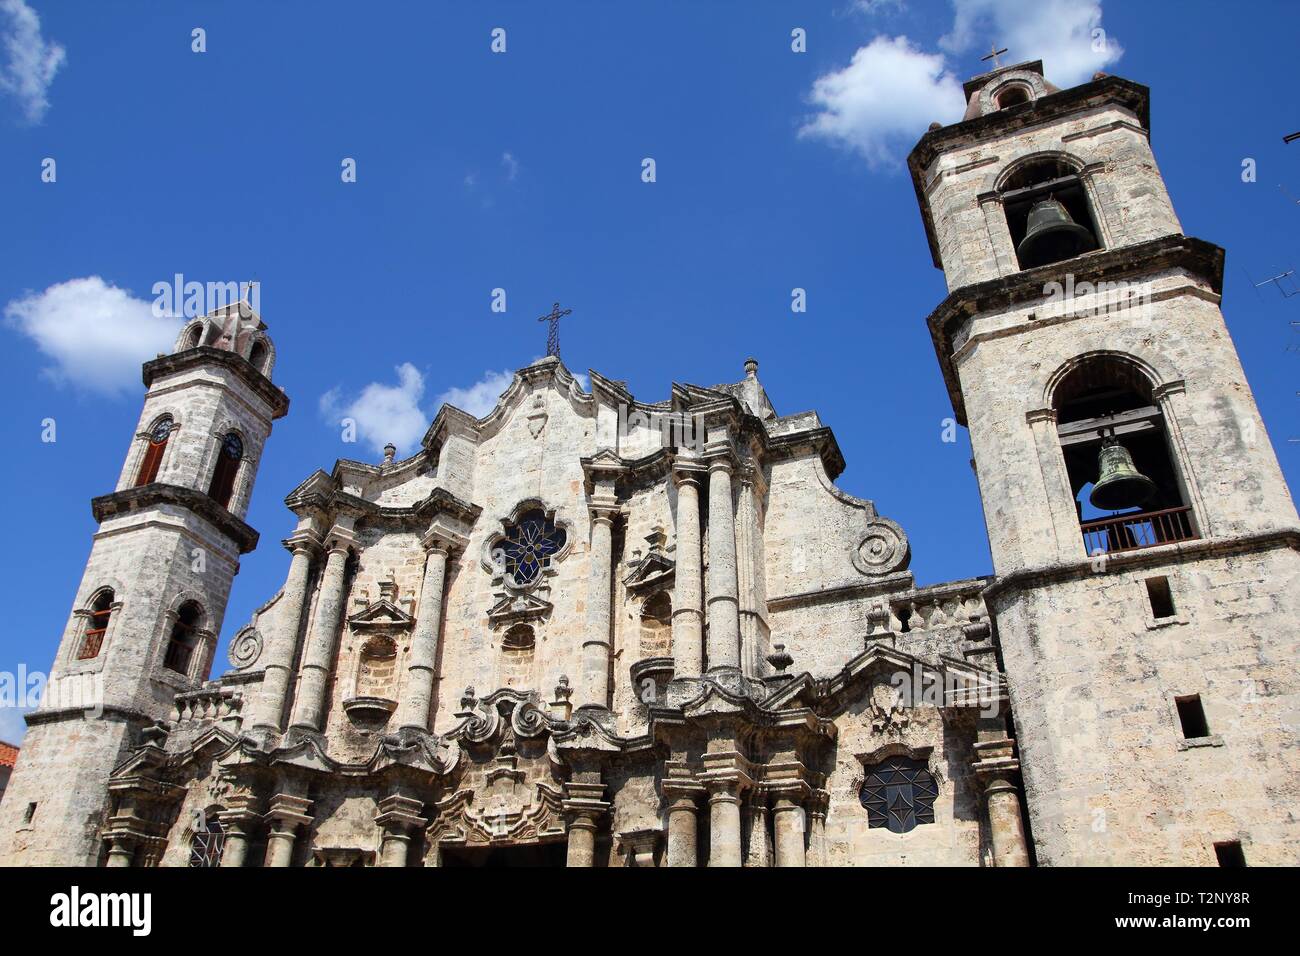 L'Avana, Cuba - architettura della città. Famosa Cattedrale barocca, con le sue torri asimmetriche. Foto Stock